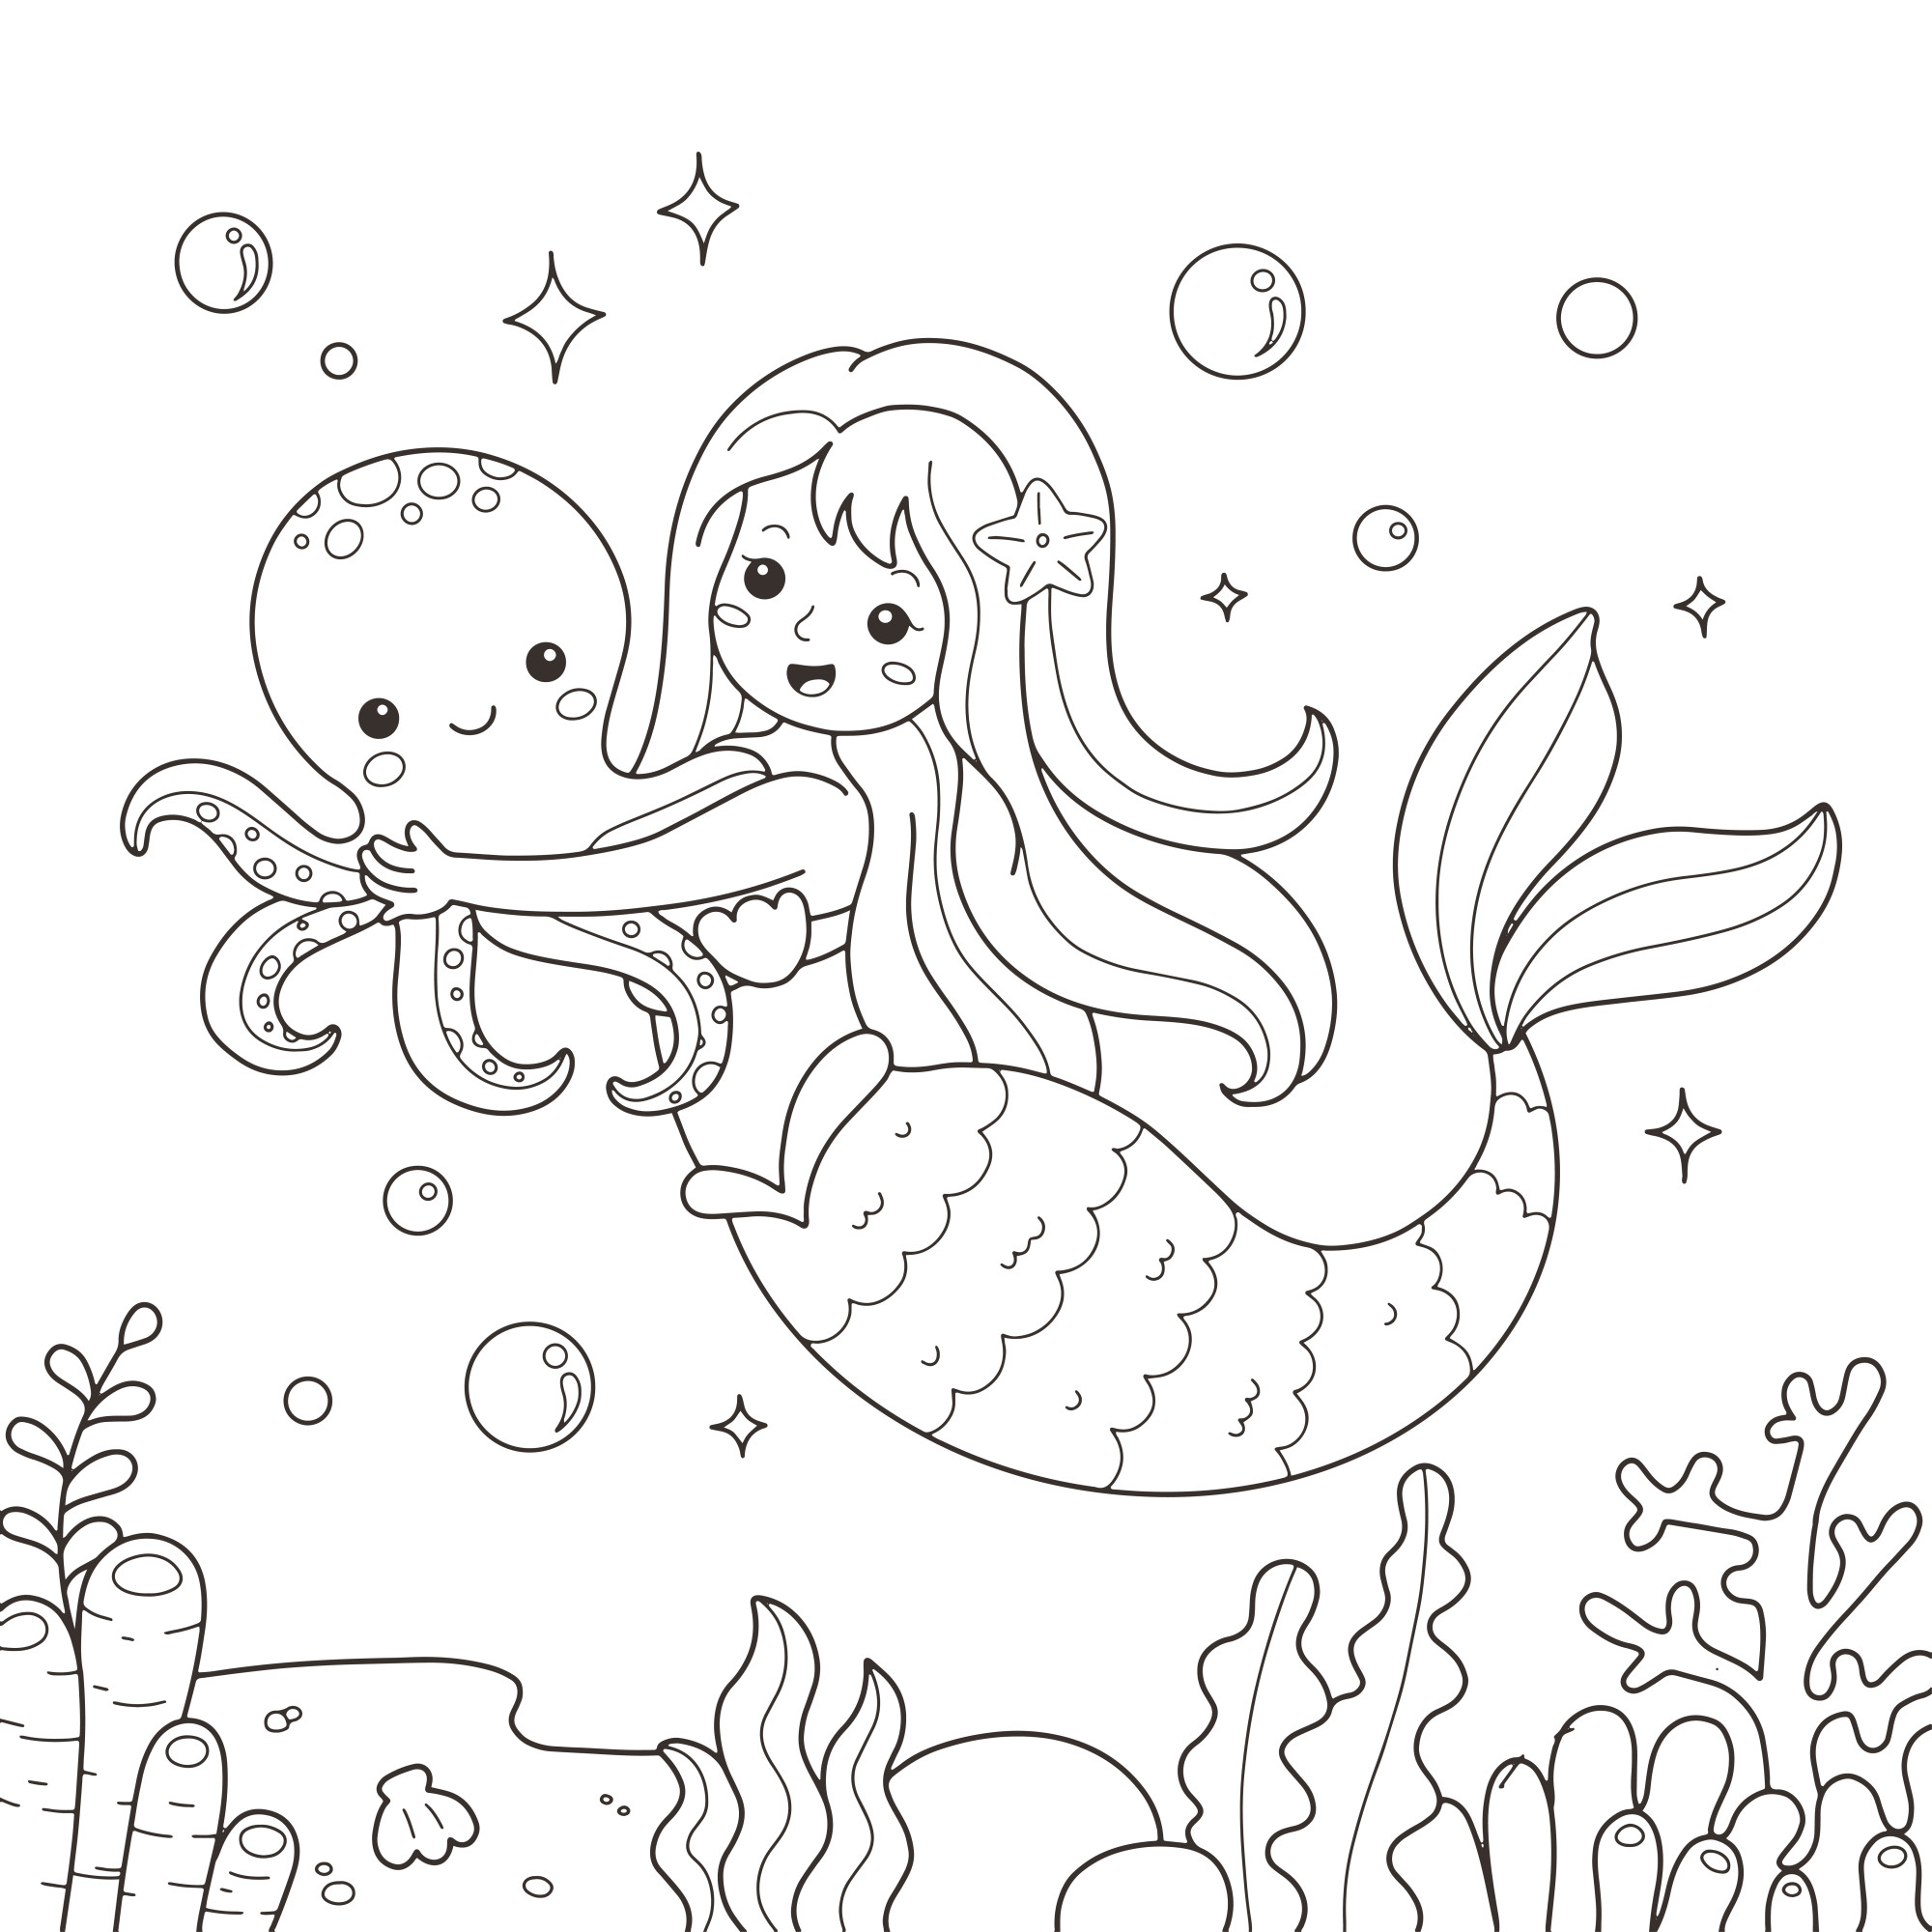 Раскраска для детей: русалочка и осьминог под водой